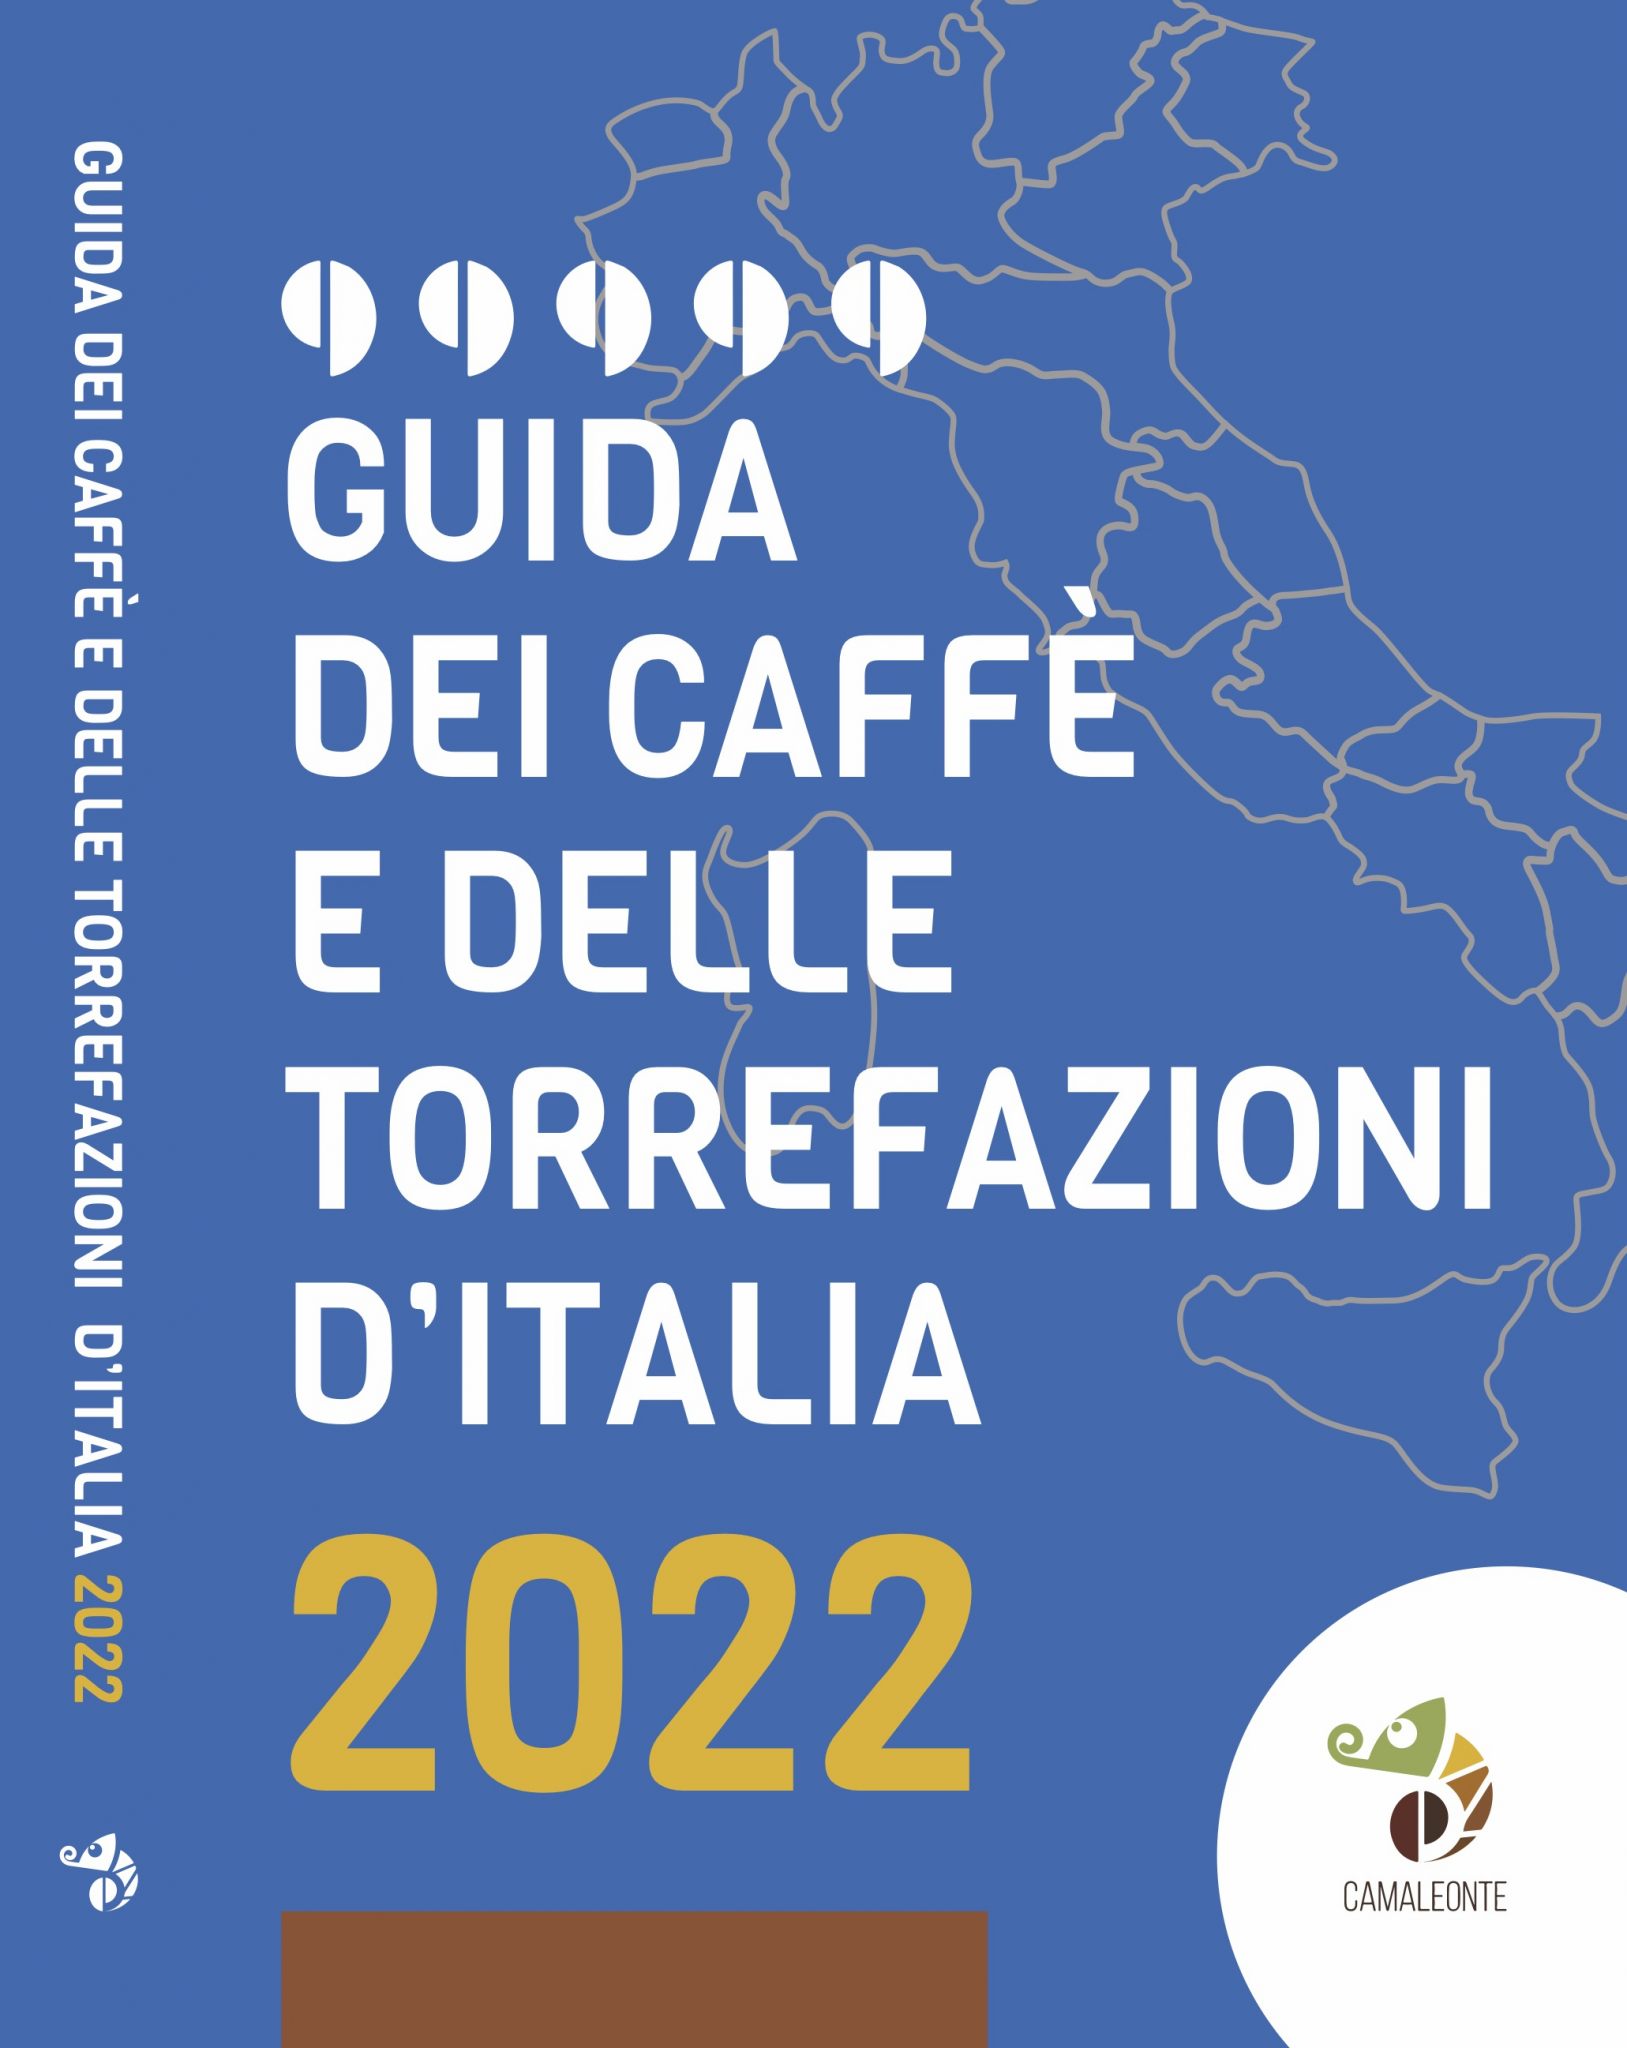 Guida dei caffè e delle torrefazioni d'Italia debutta Camaleonte con la prima edizione